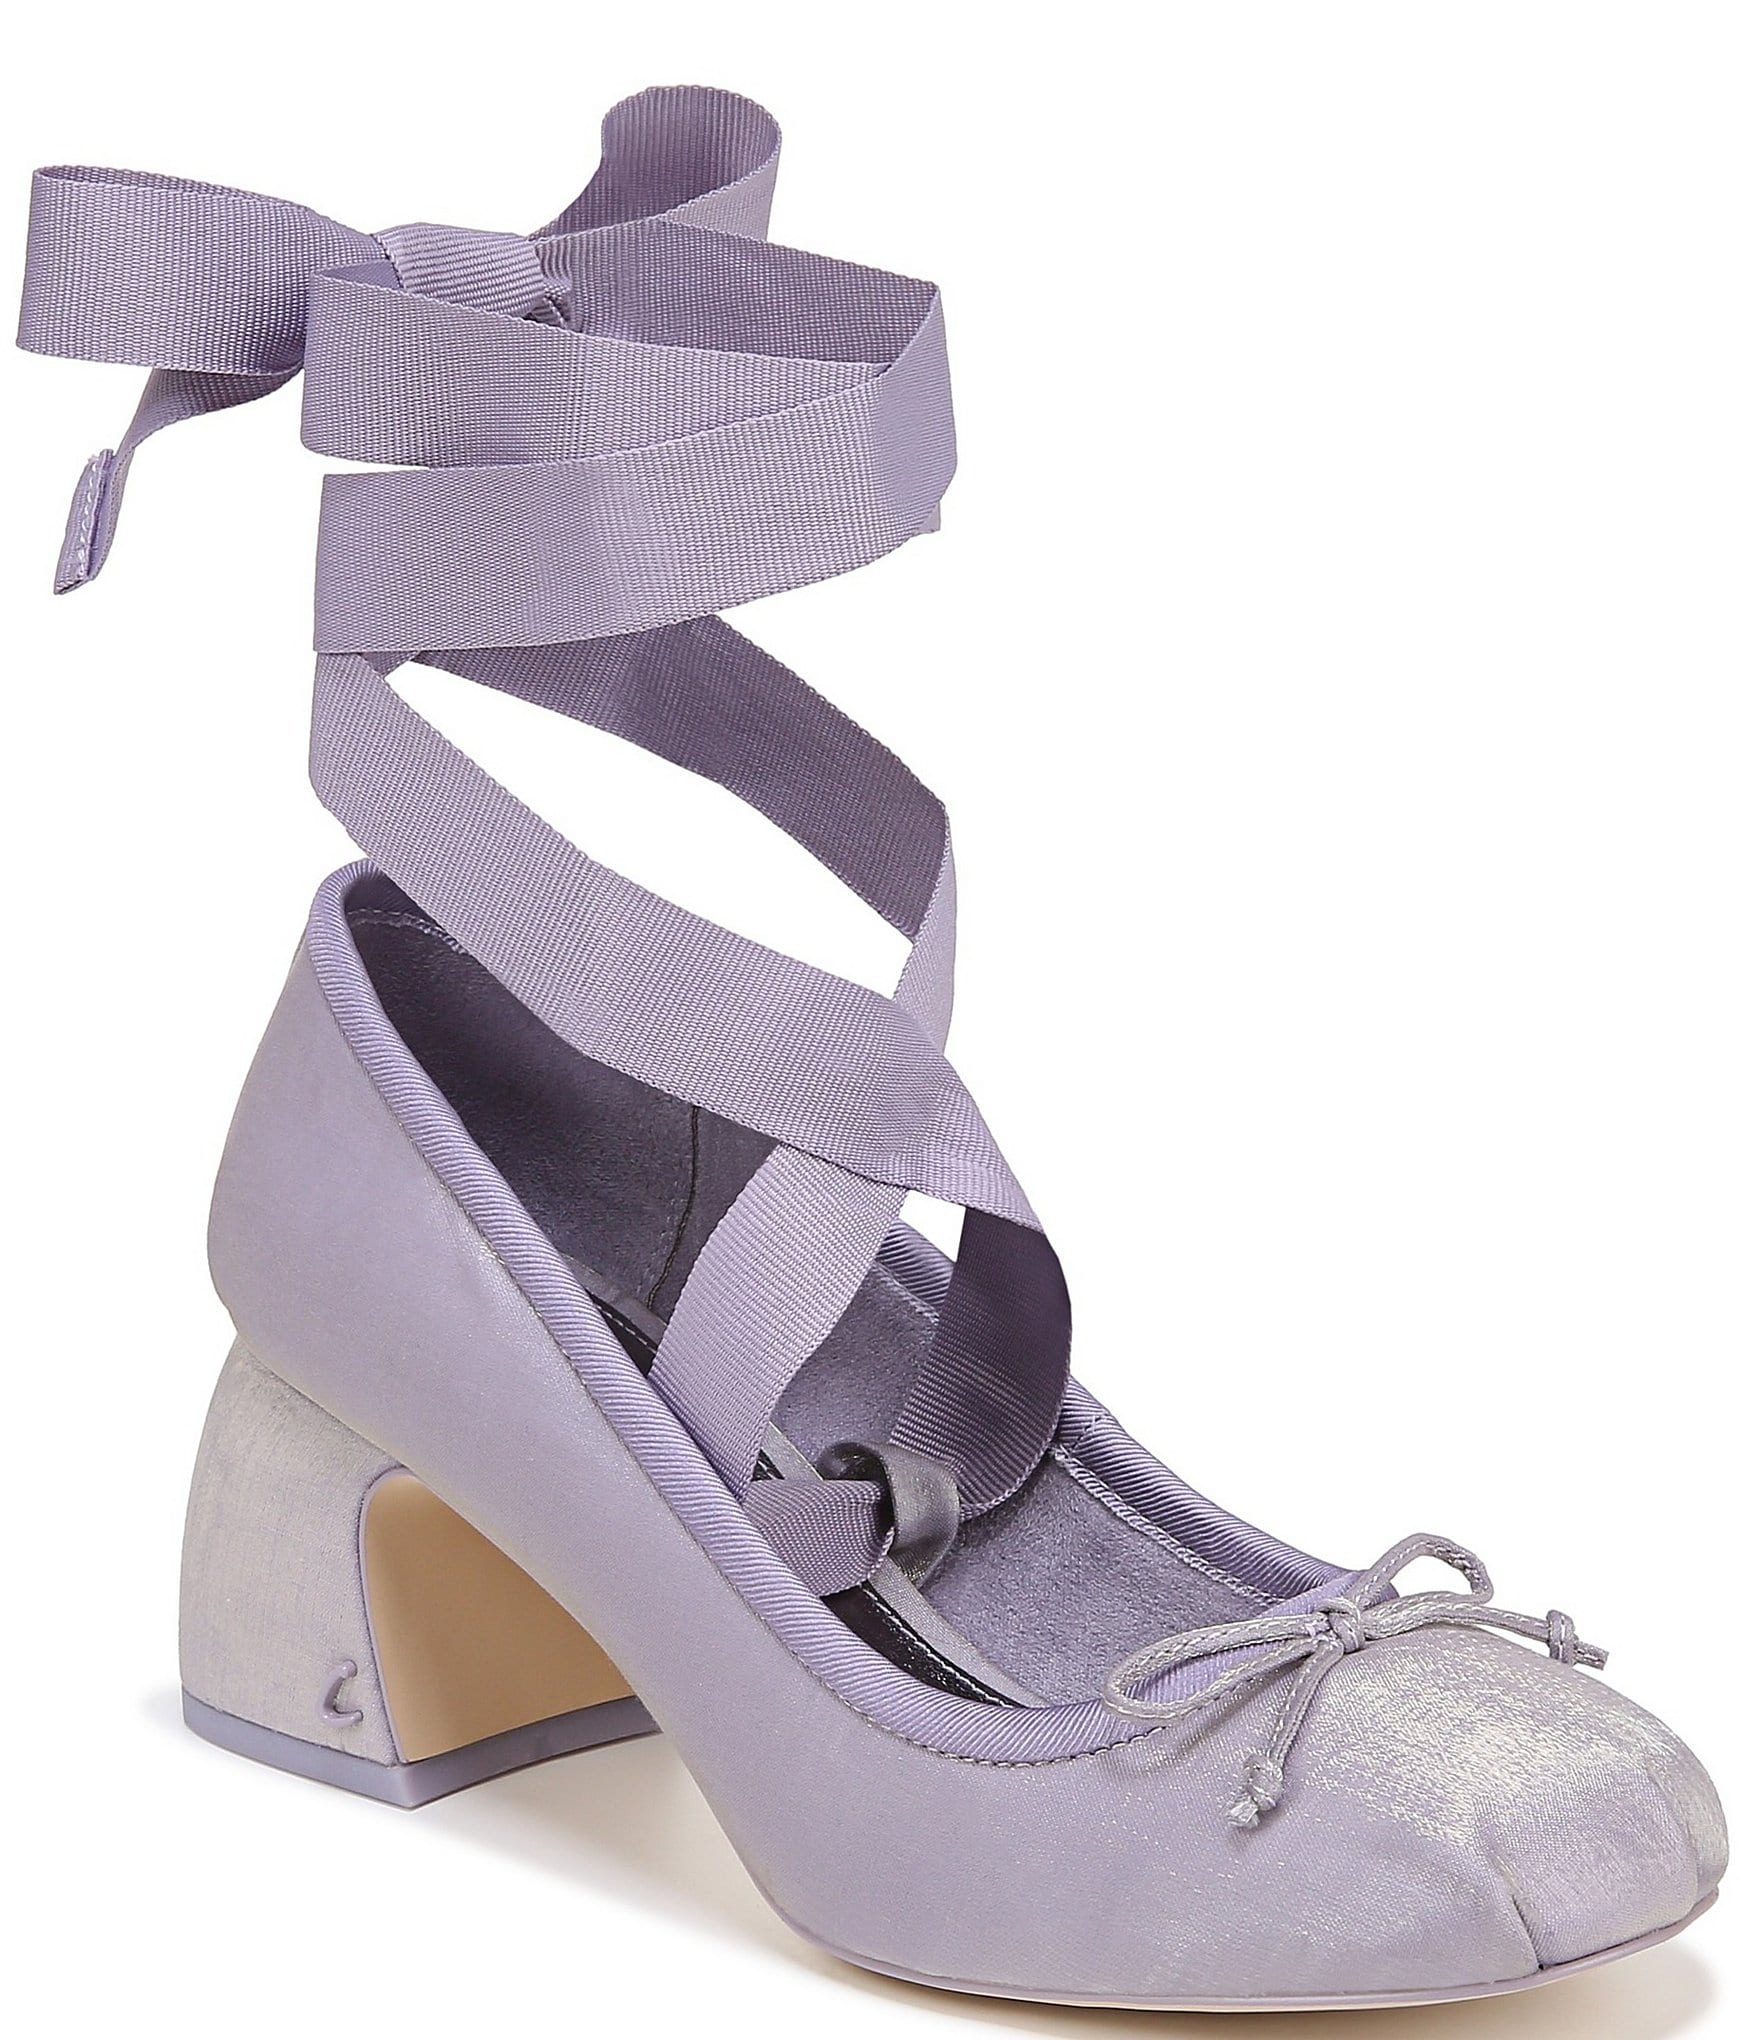 BerryQ -Minuet- 5.5cm High Heels Lolita Ballet Shoes